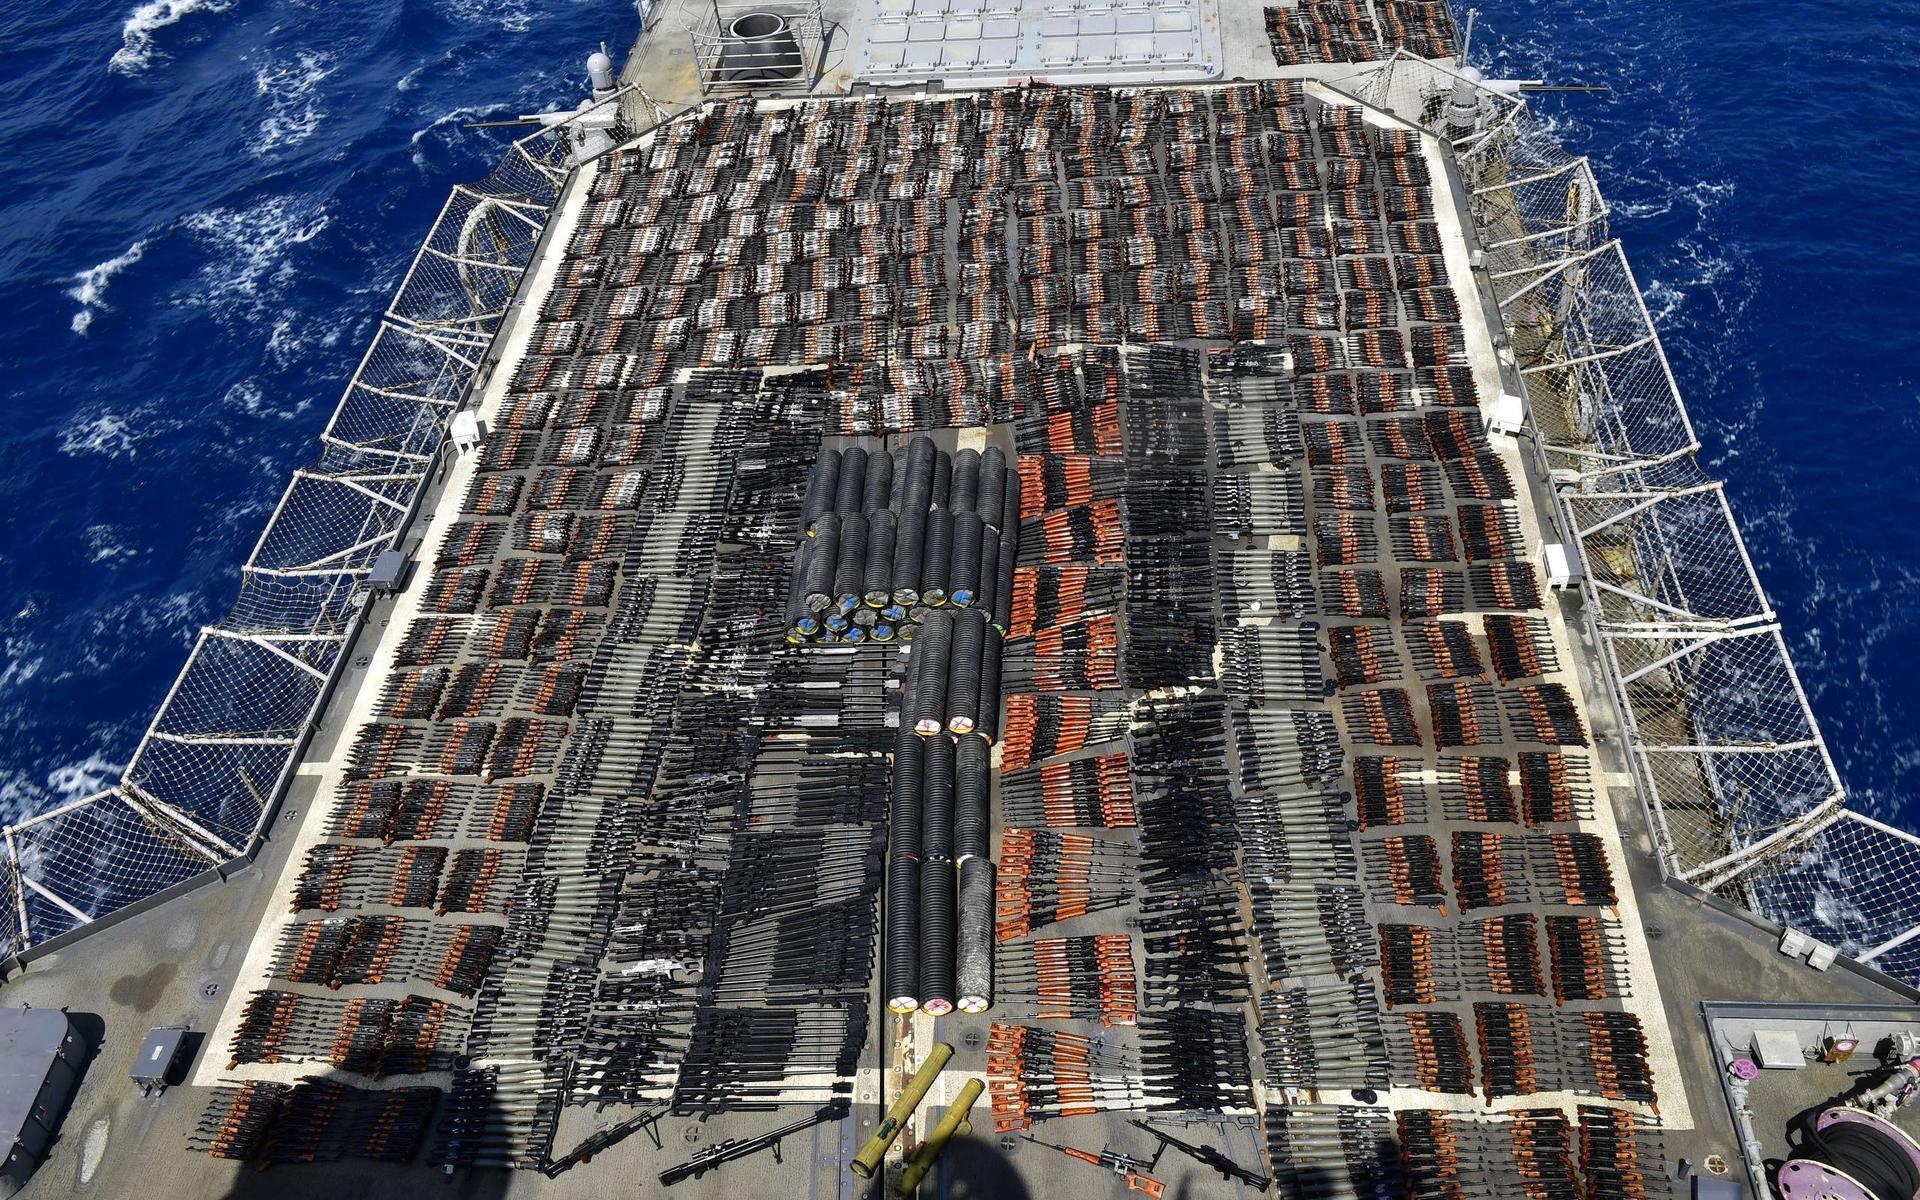 Vapnen fångades sedan på bild när de täckte i princip hela övre däck på det 173 meter långa krigsfartyget USS Monterey, på väg att frakta vapnen till en säkrare plats.